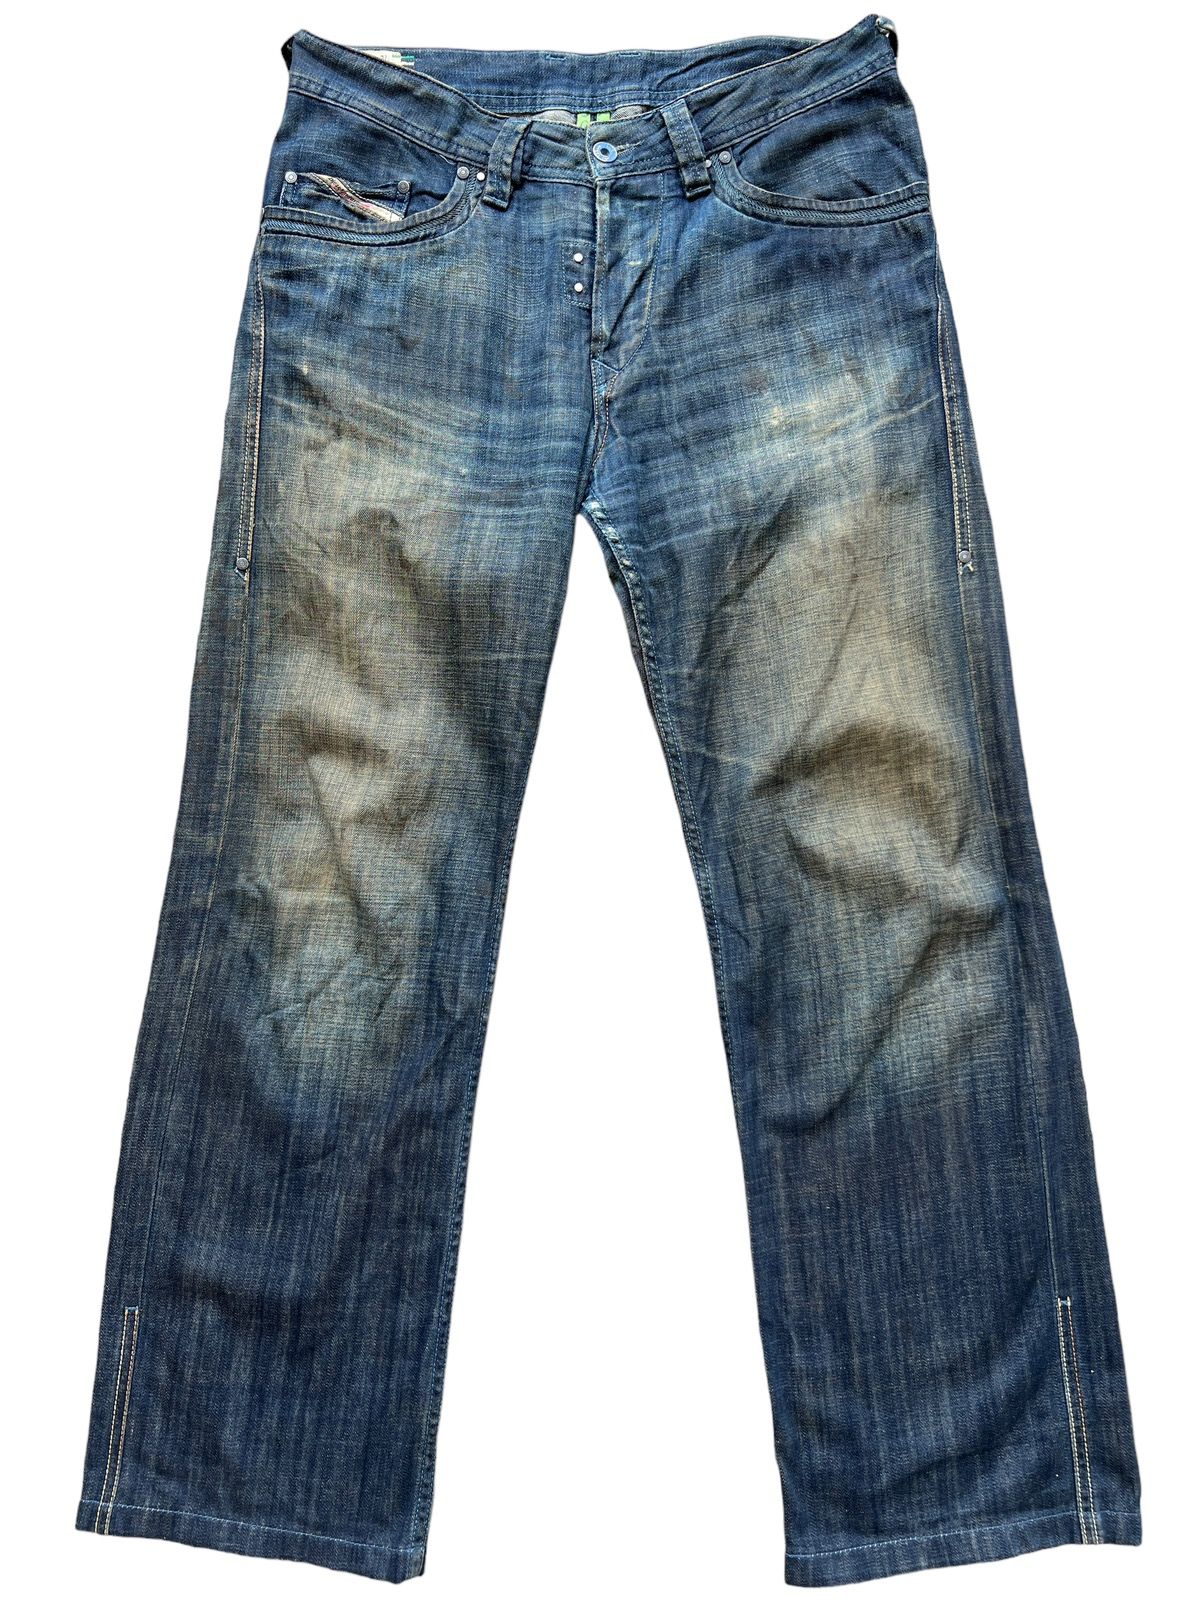 Vintage Diesel Industry Distressed Denim Jeans 34x30 - 2